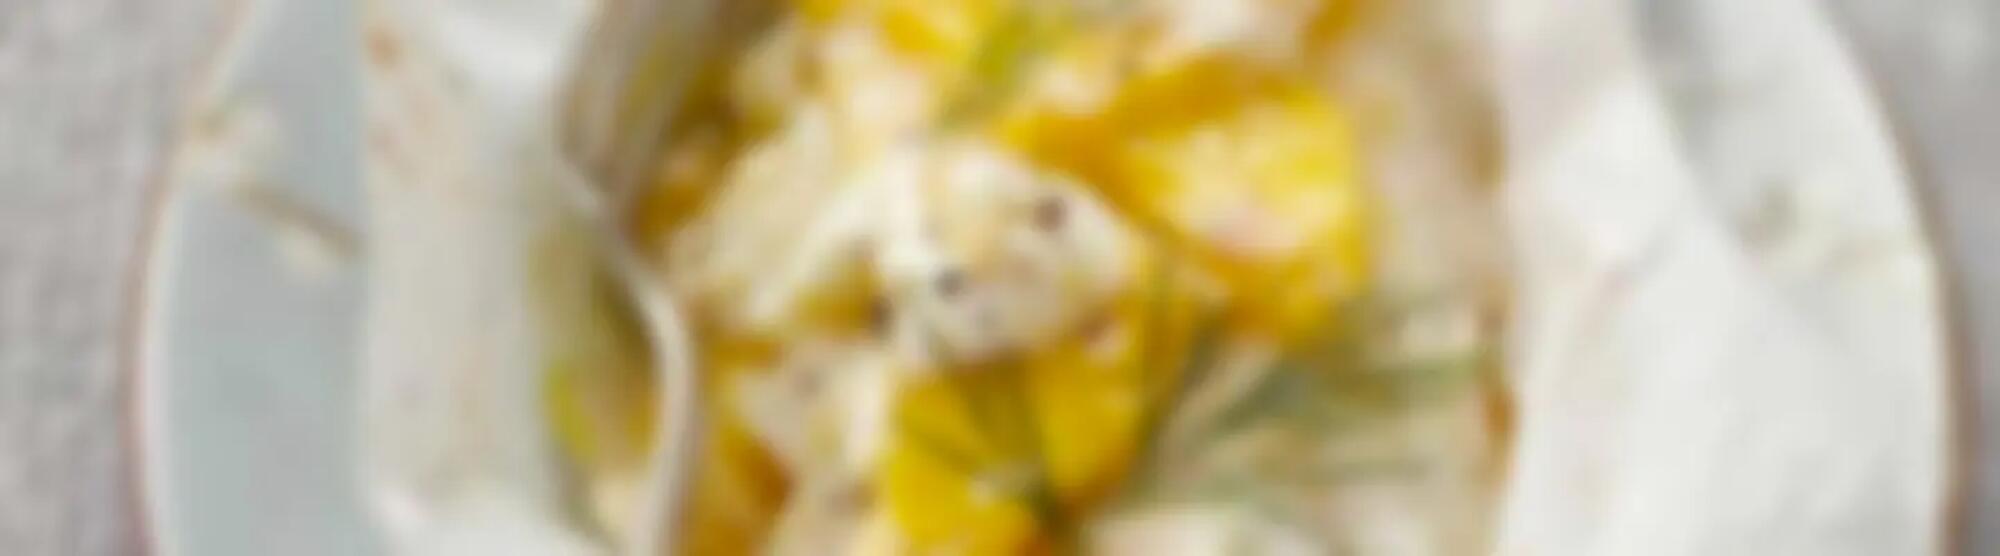 Recette : Papillotes de cabillaud à la mangue et fromage frais